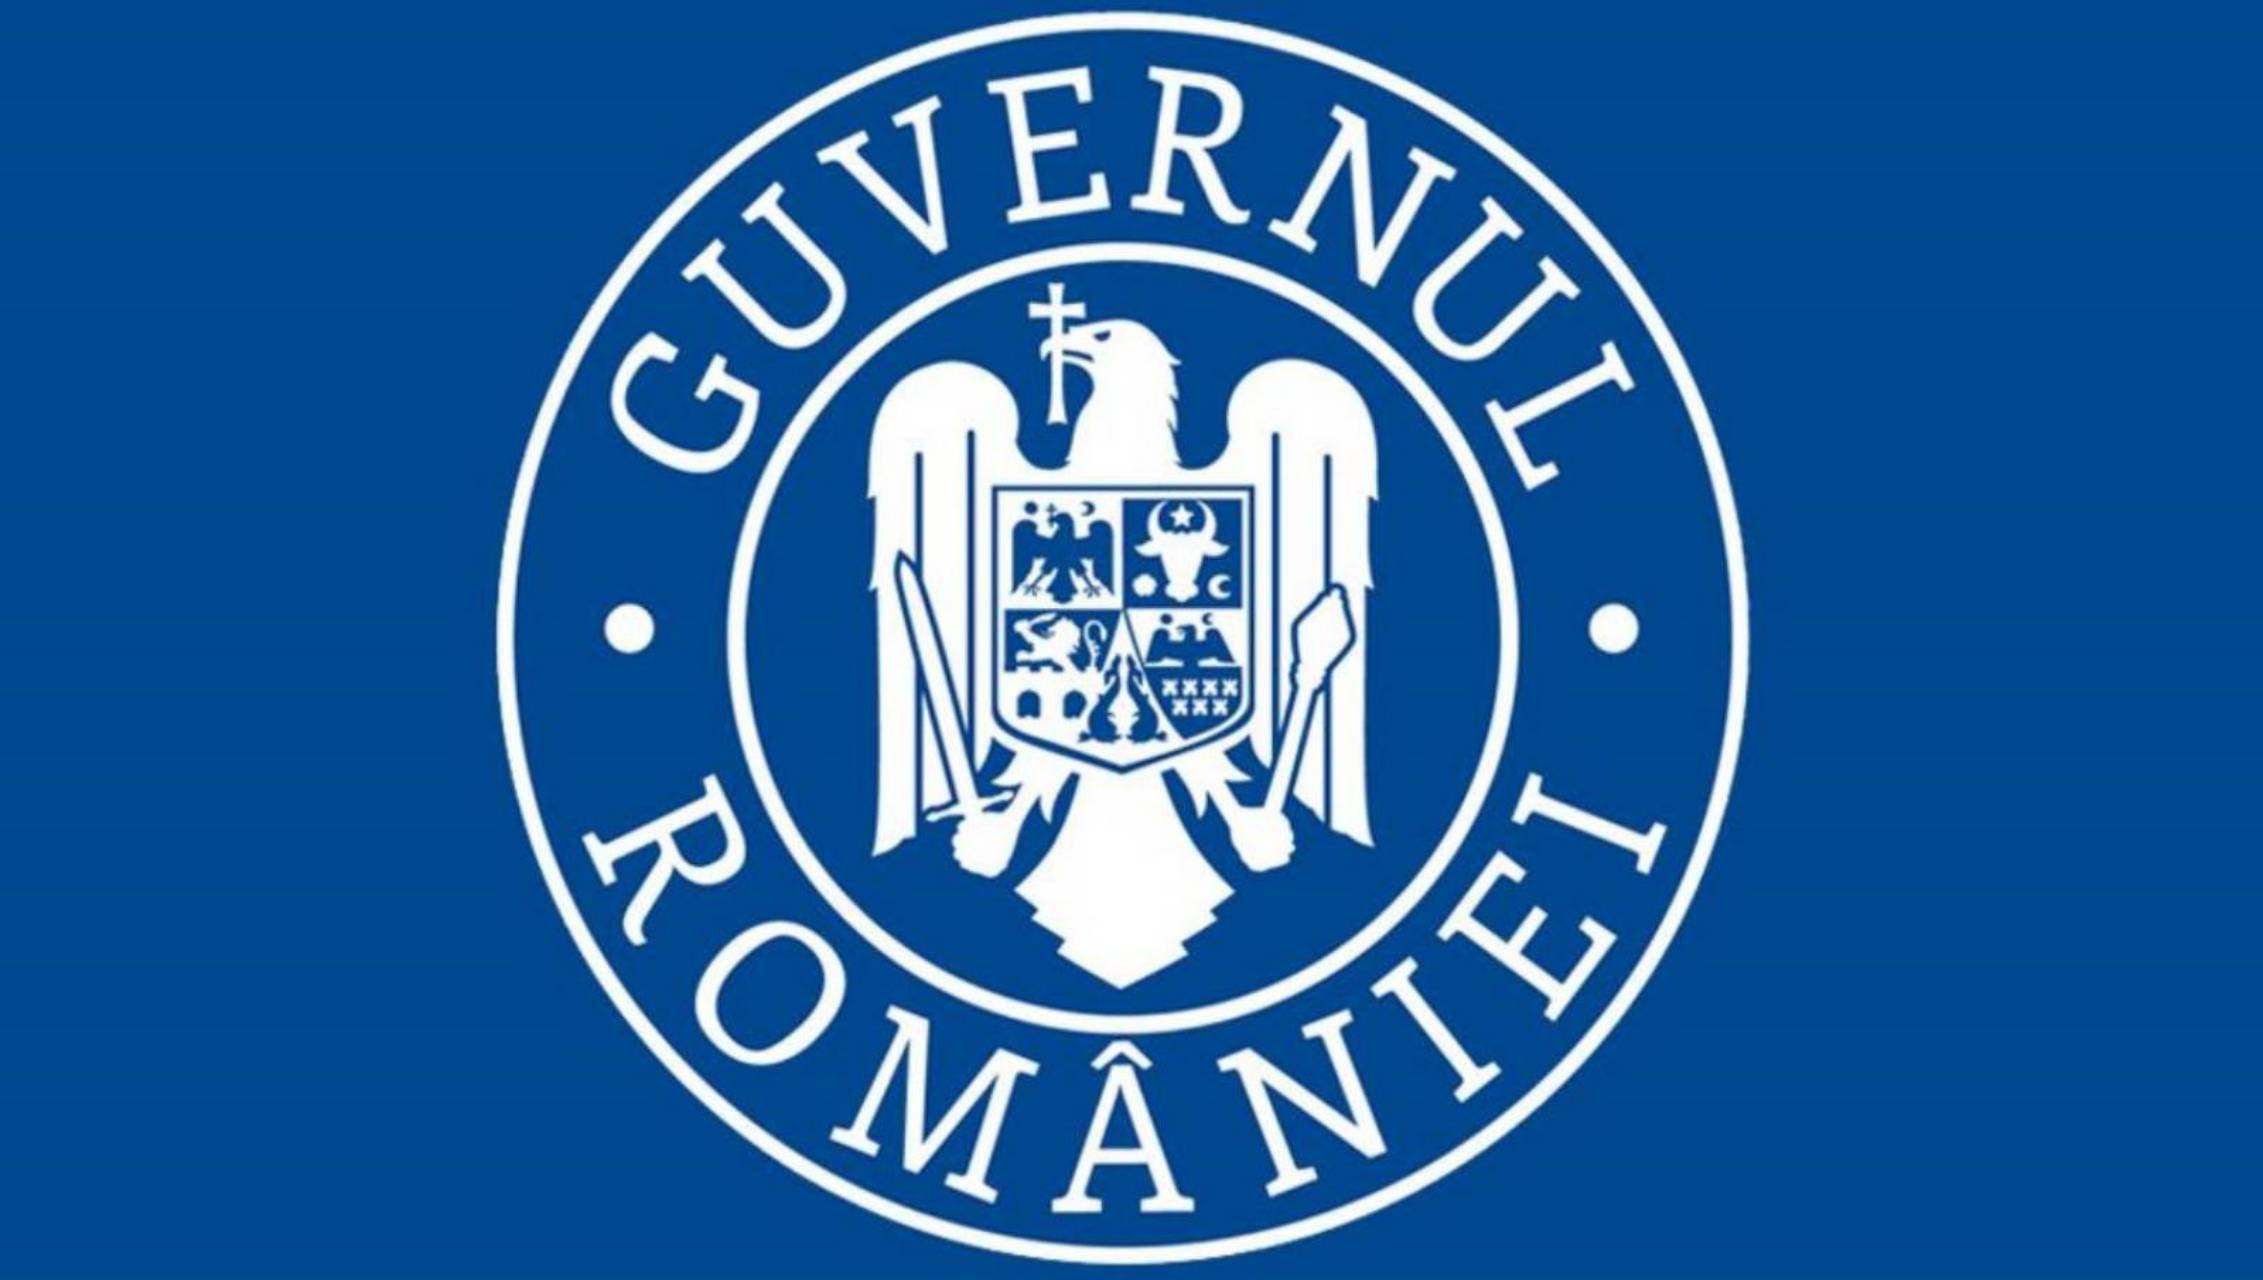 Le gouvernement roumain met en garde les Roumains